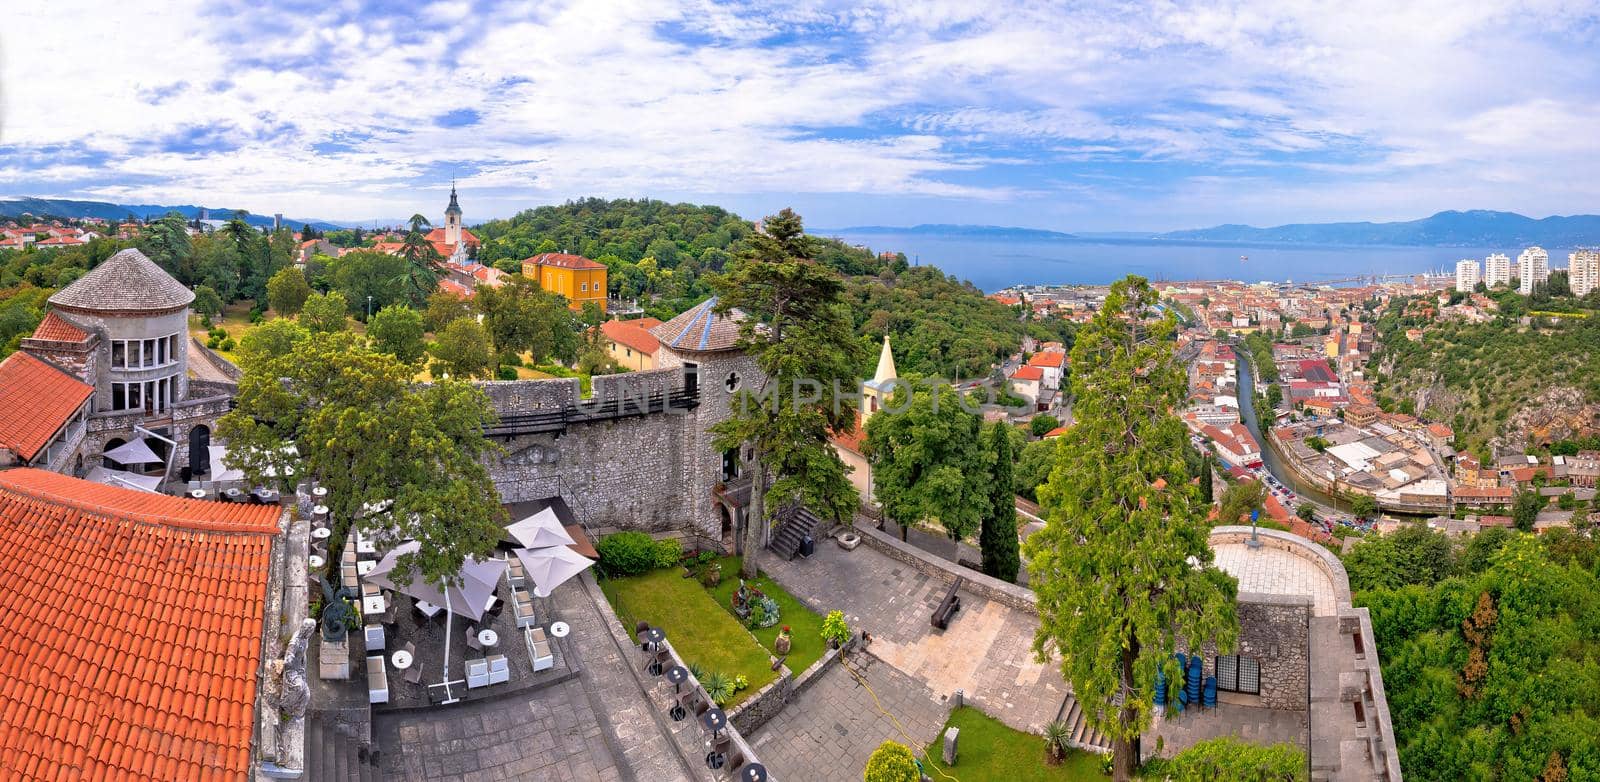 City of Rijeka and Trsat panoramic view, Kvarner bay of Croatia
